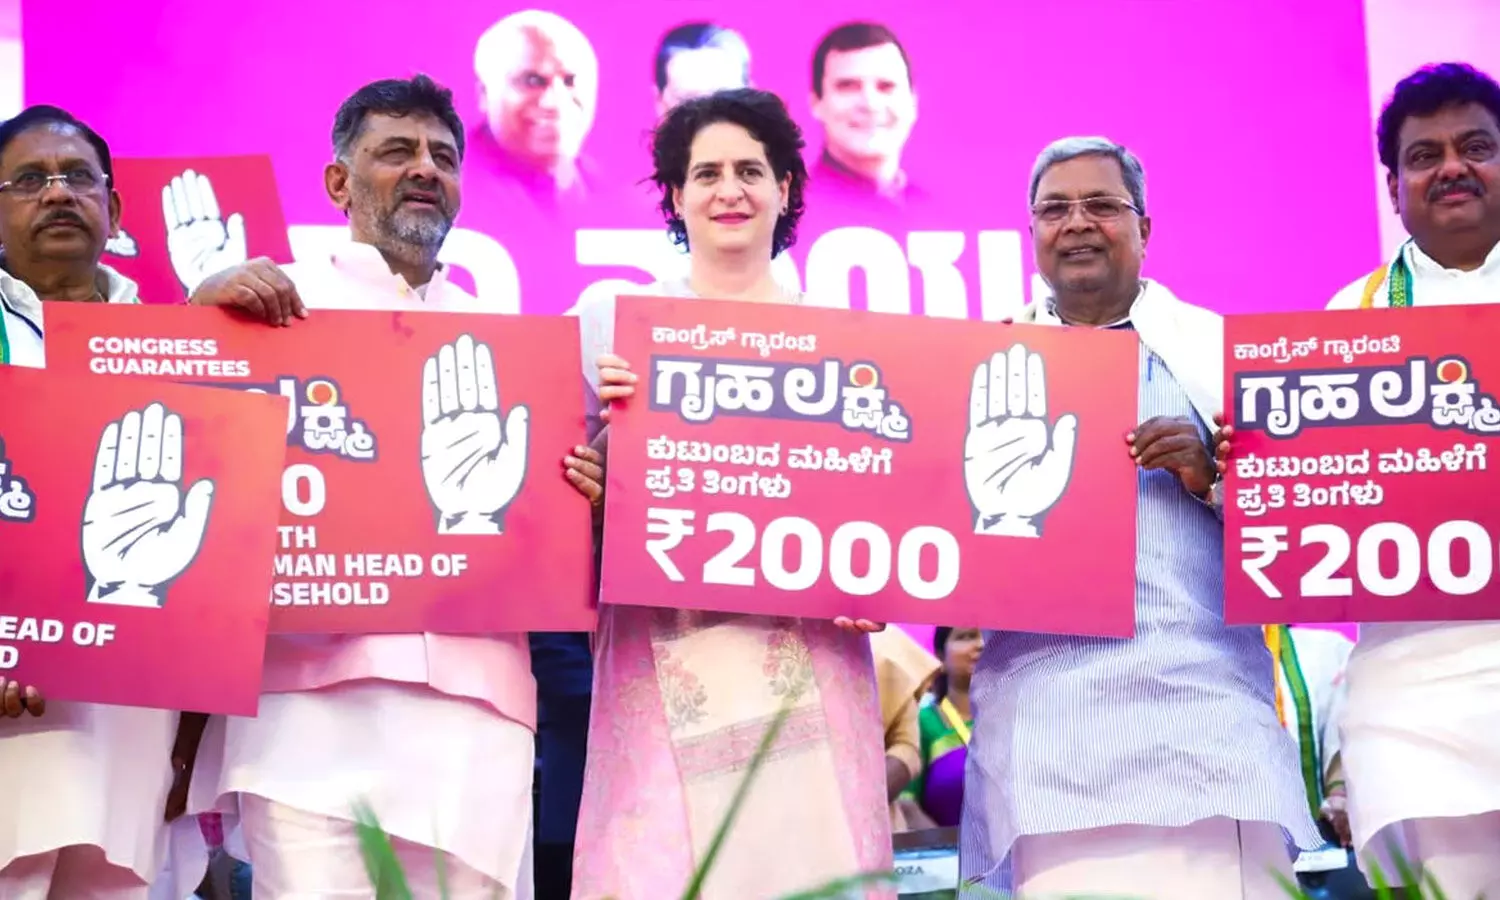 Priyanka Gandhi to Launch Telangana’s Congress Government Schemes